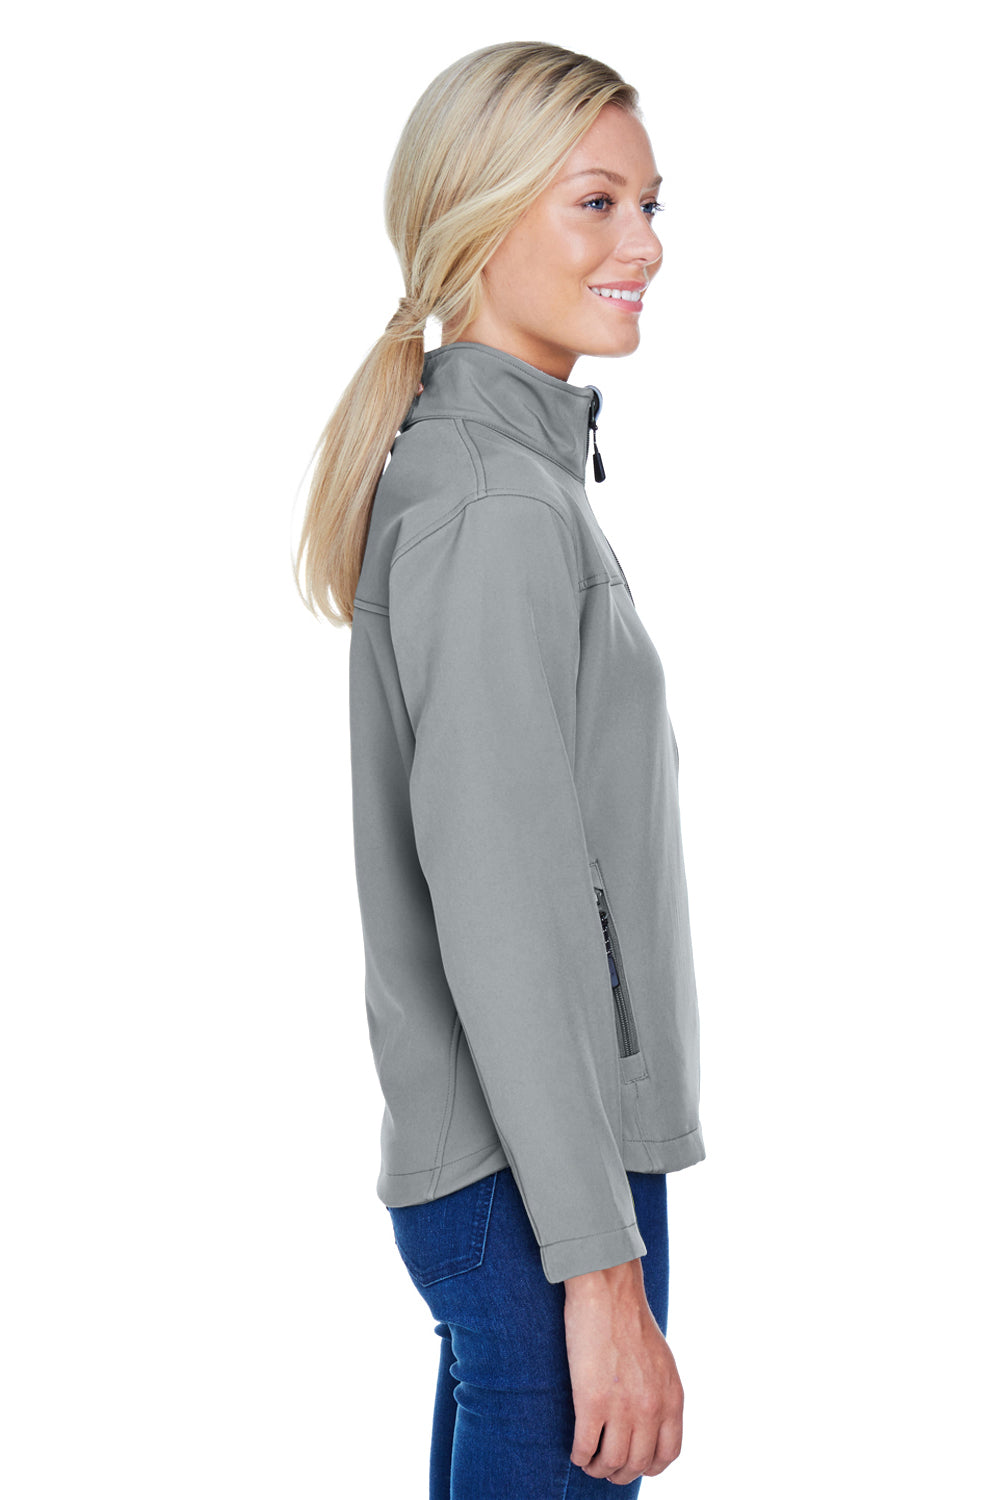 Devon & Jones D995W Womens Wind & Water Resistant Full Zip Jacket Charcoal Grey Side